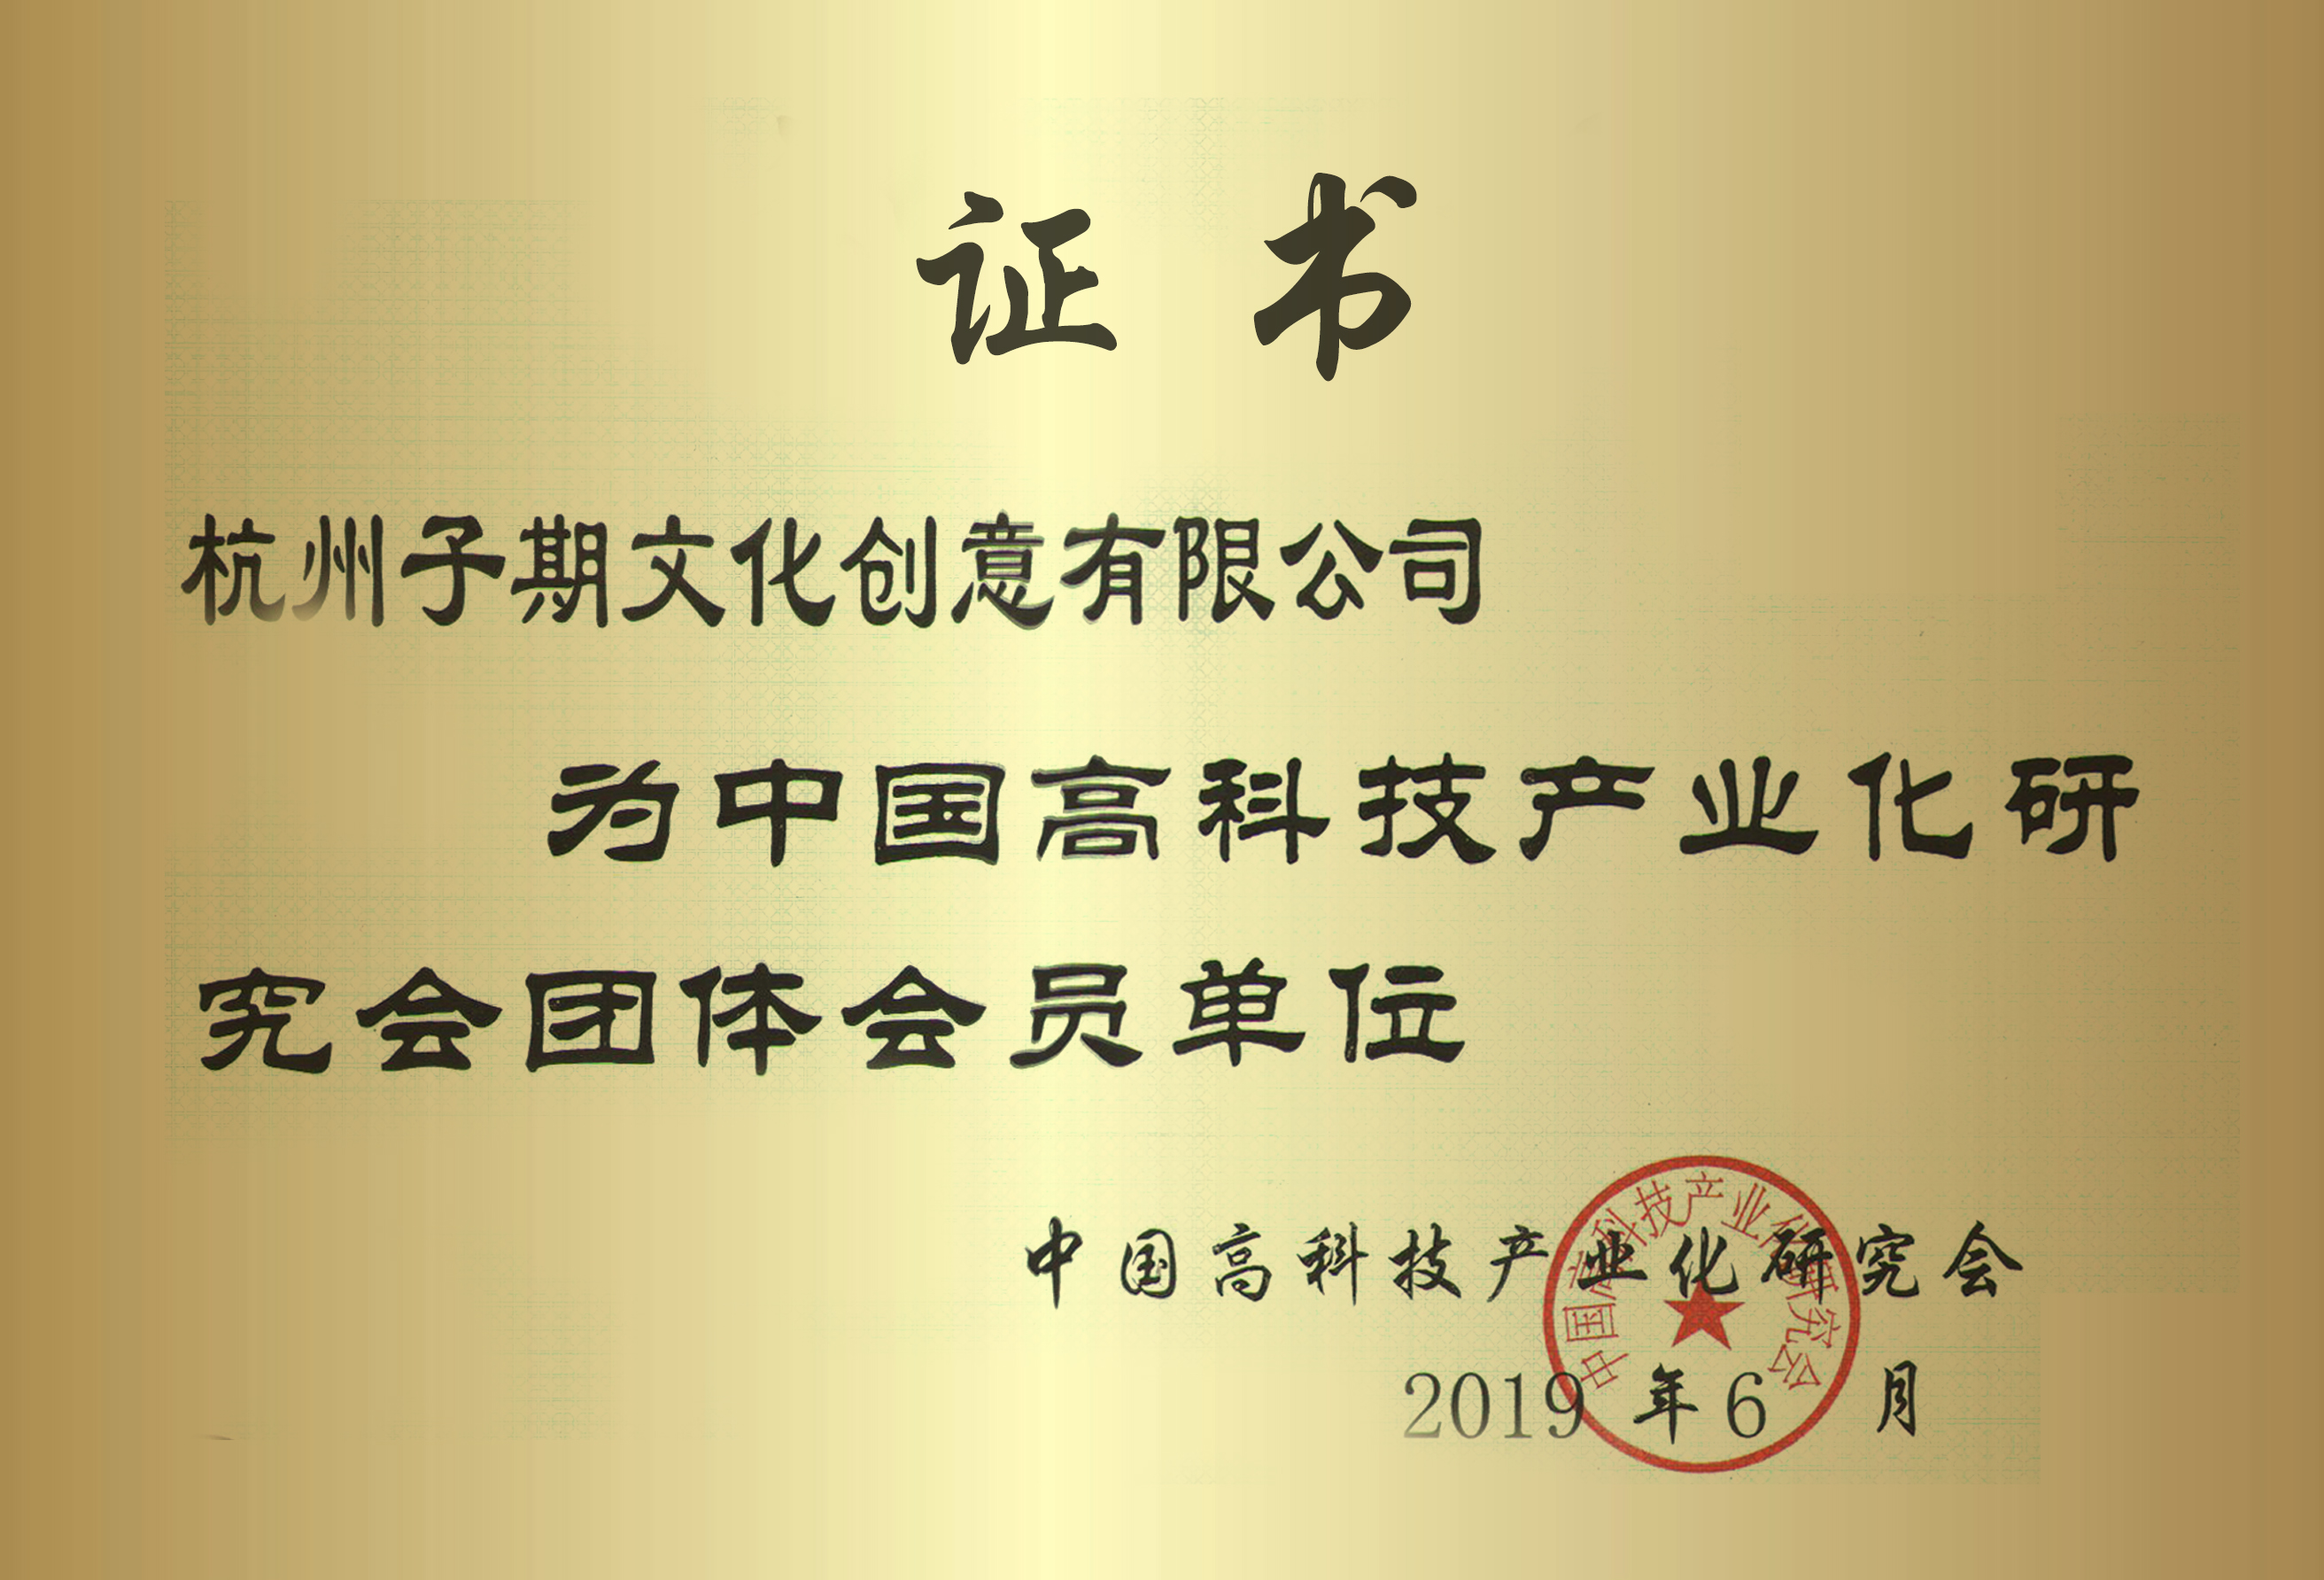 子期机器人为中国高科技产业化研究会员单位